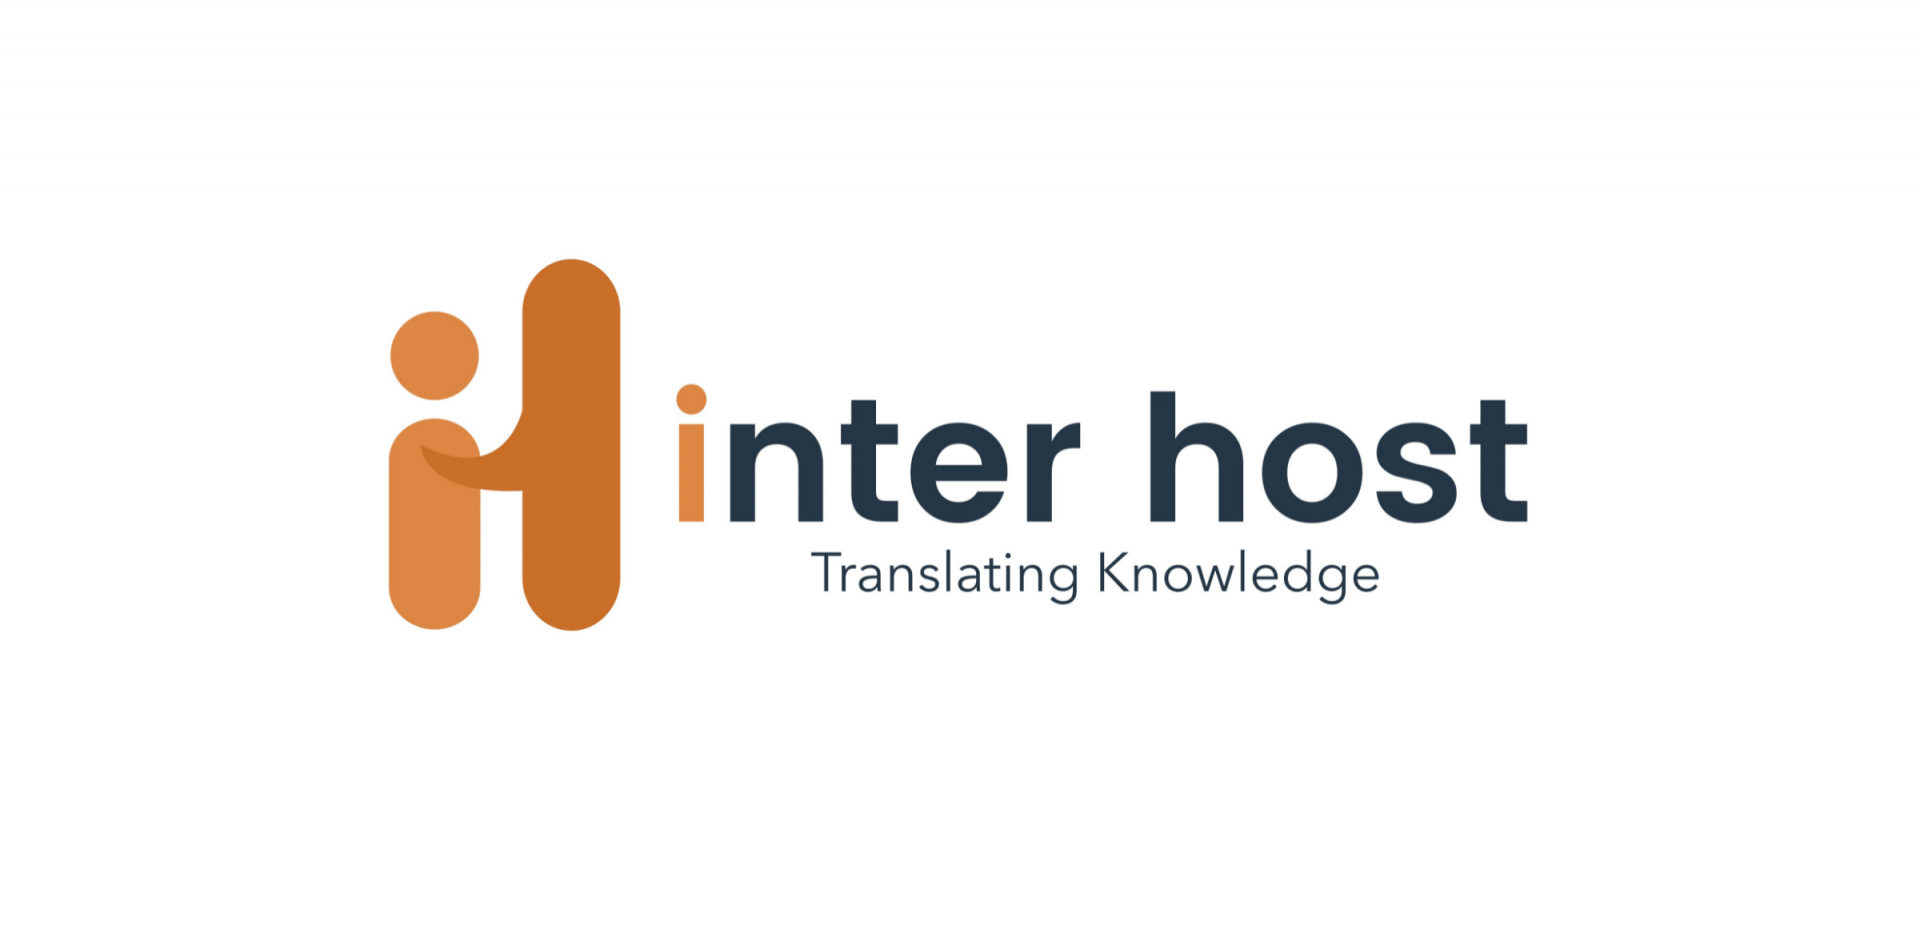 Inter host